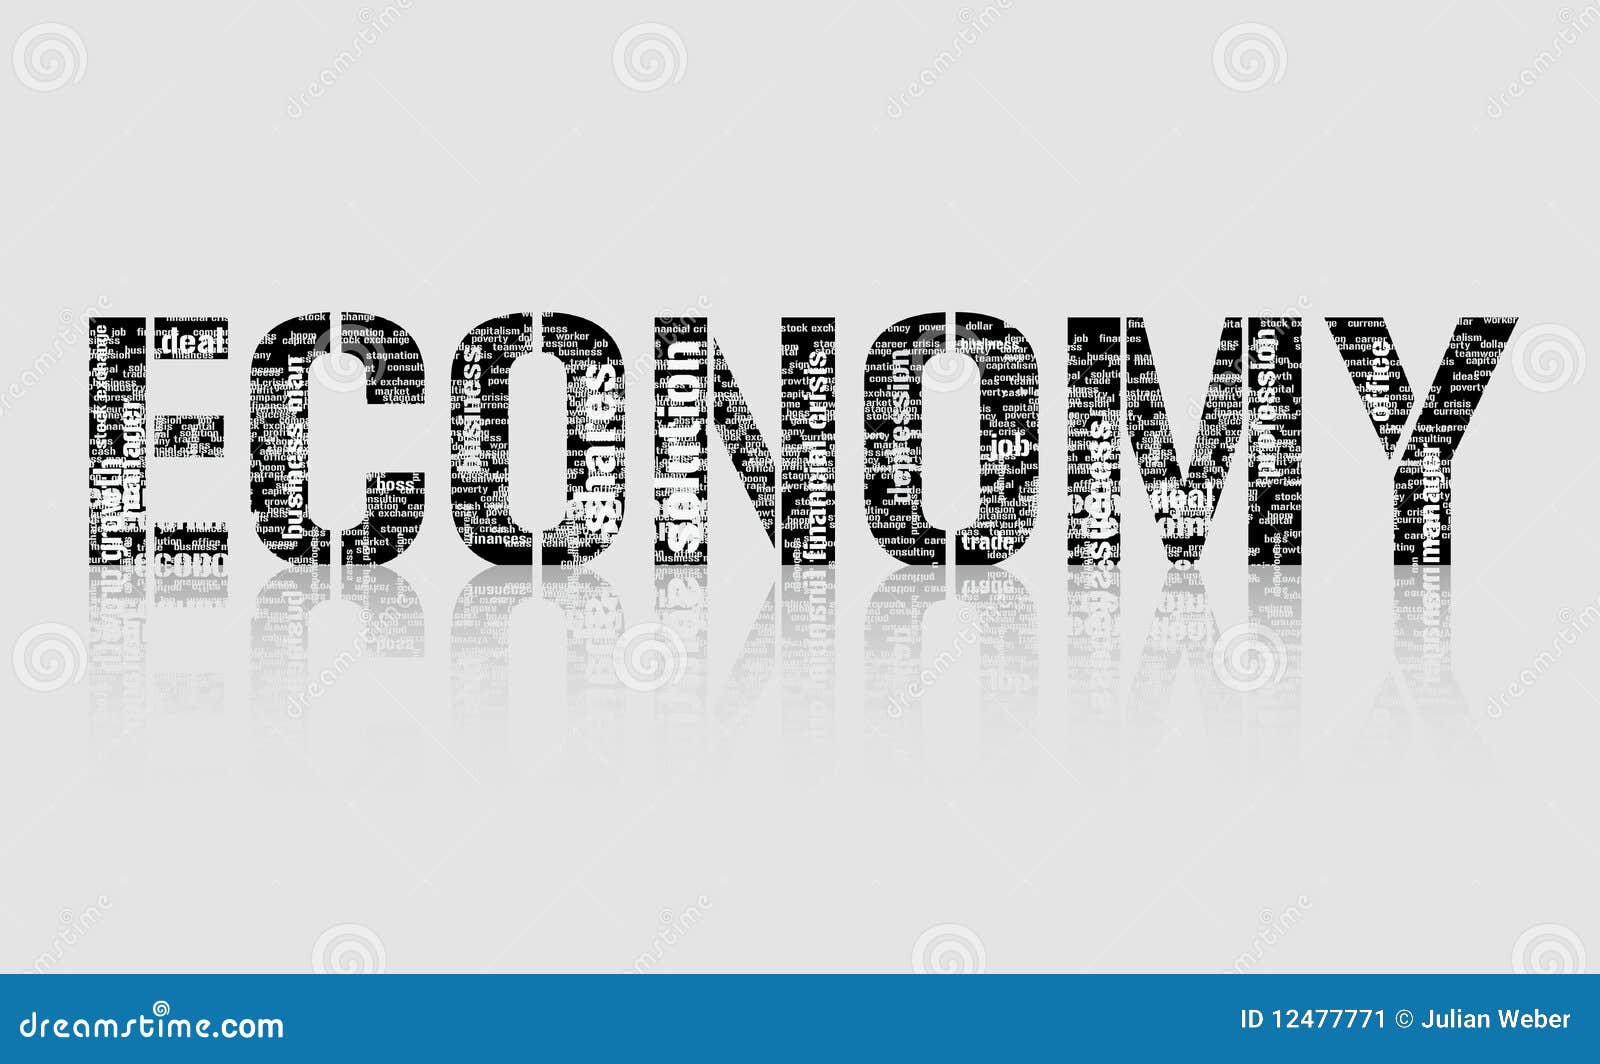 Economics Terms flashcards | Quizlet